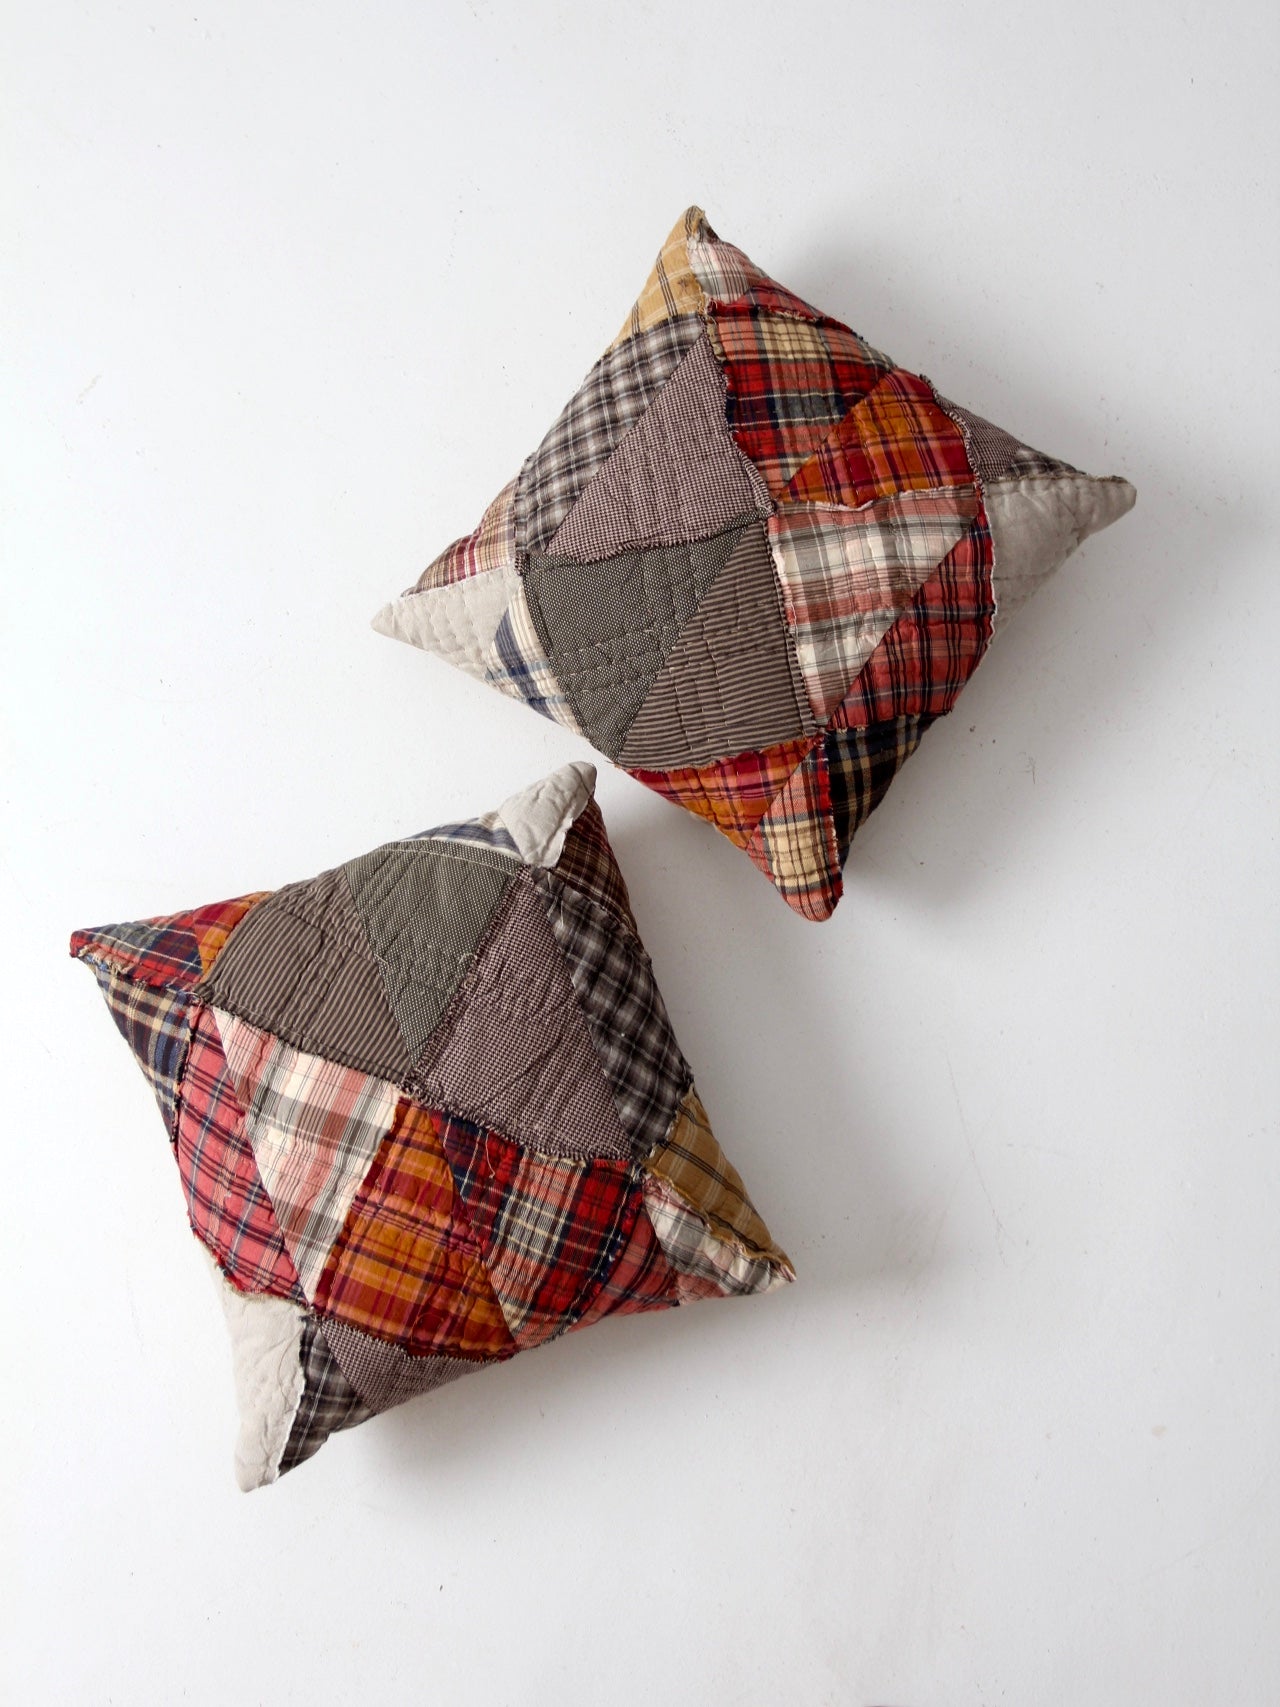 vintage patchwork decorative pillows